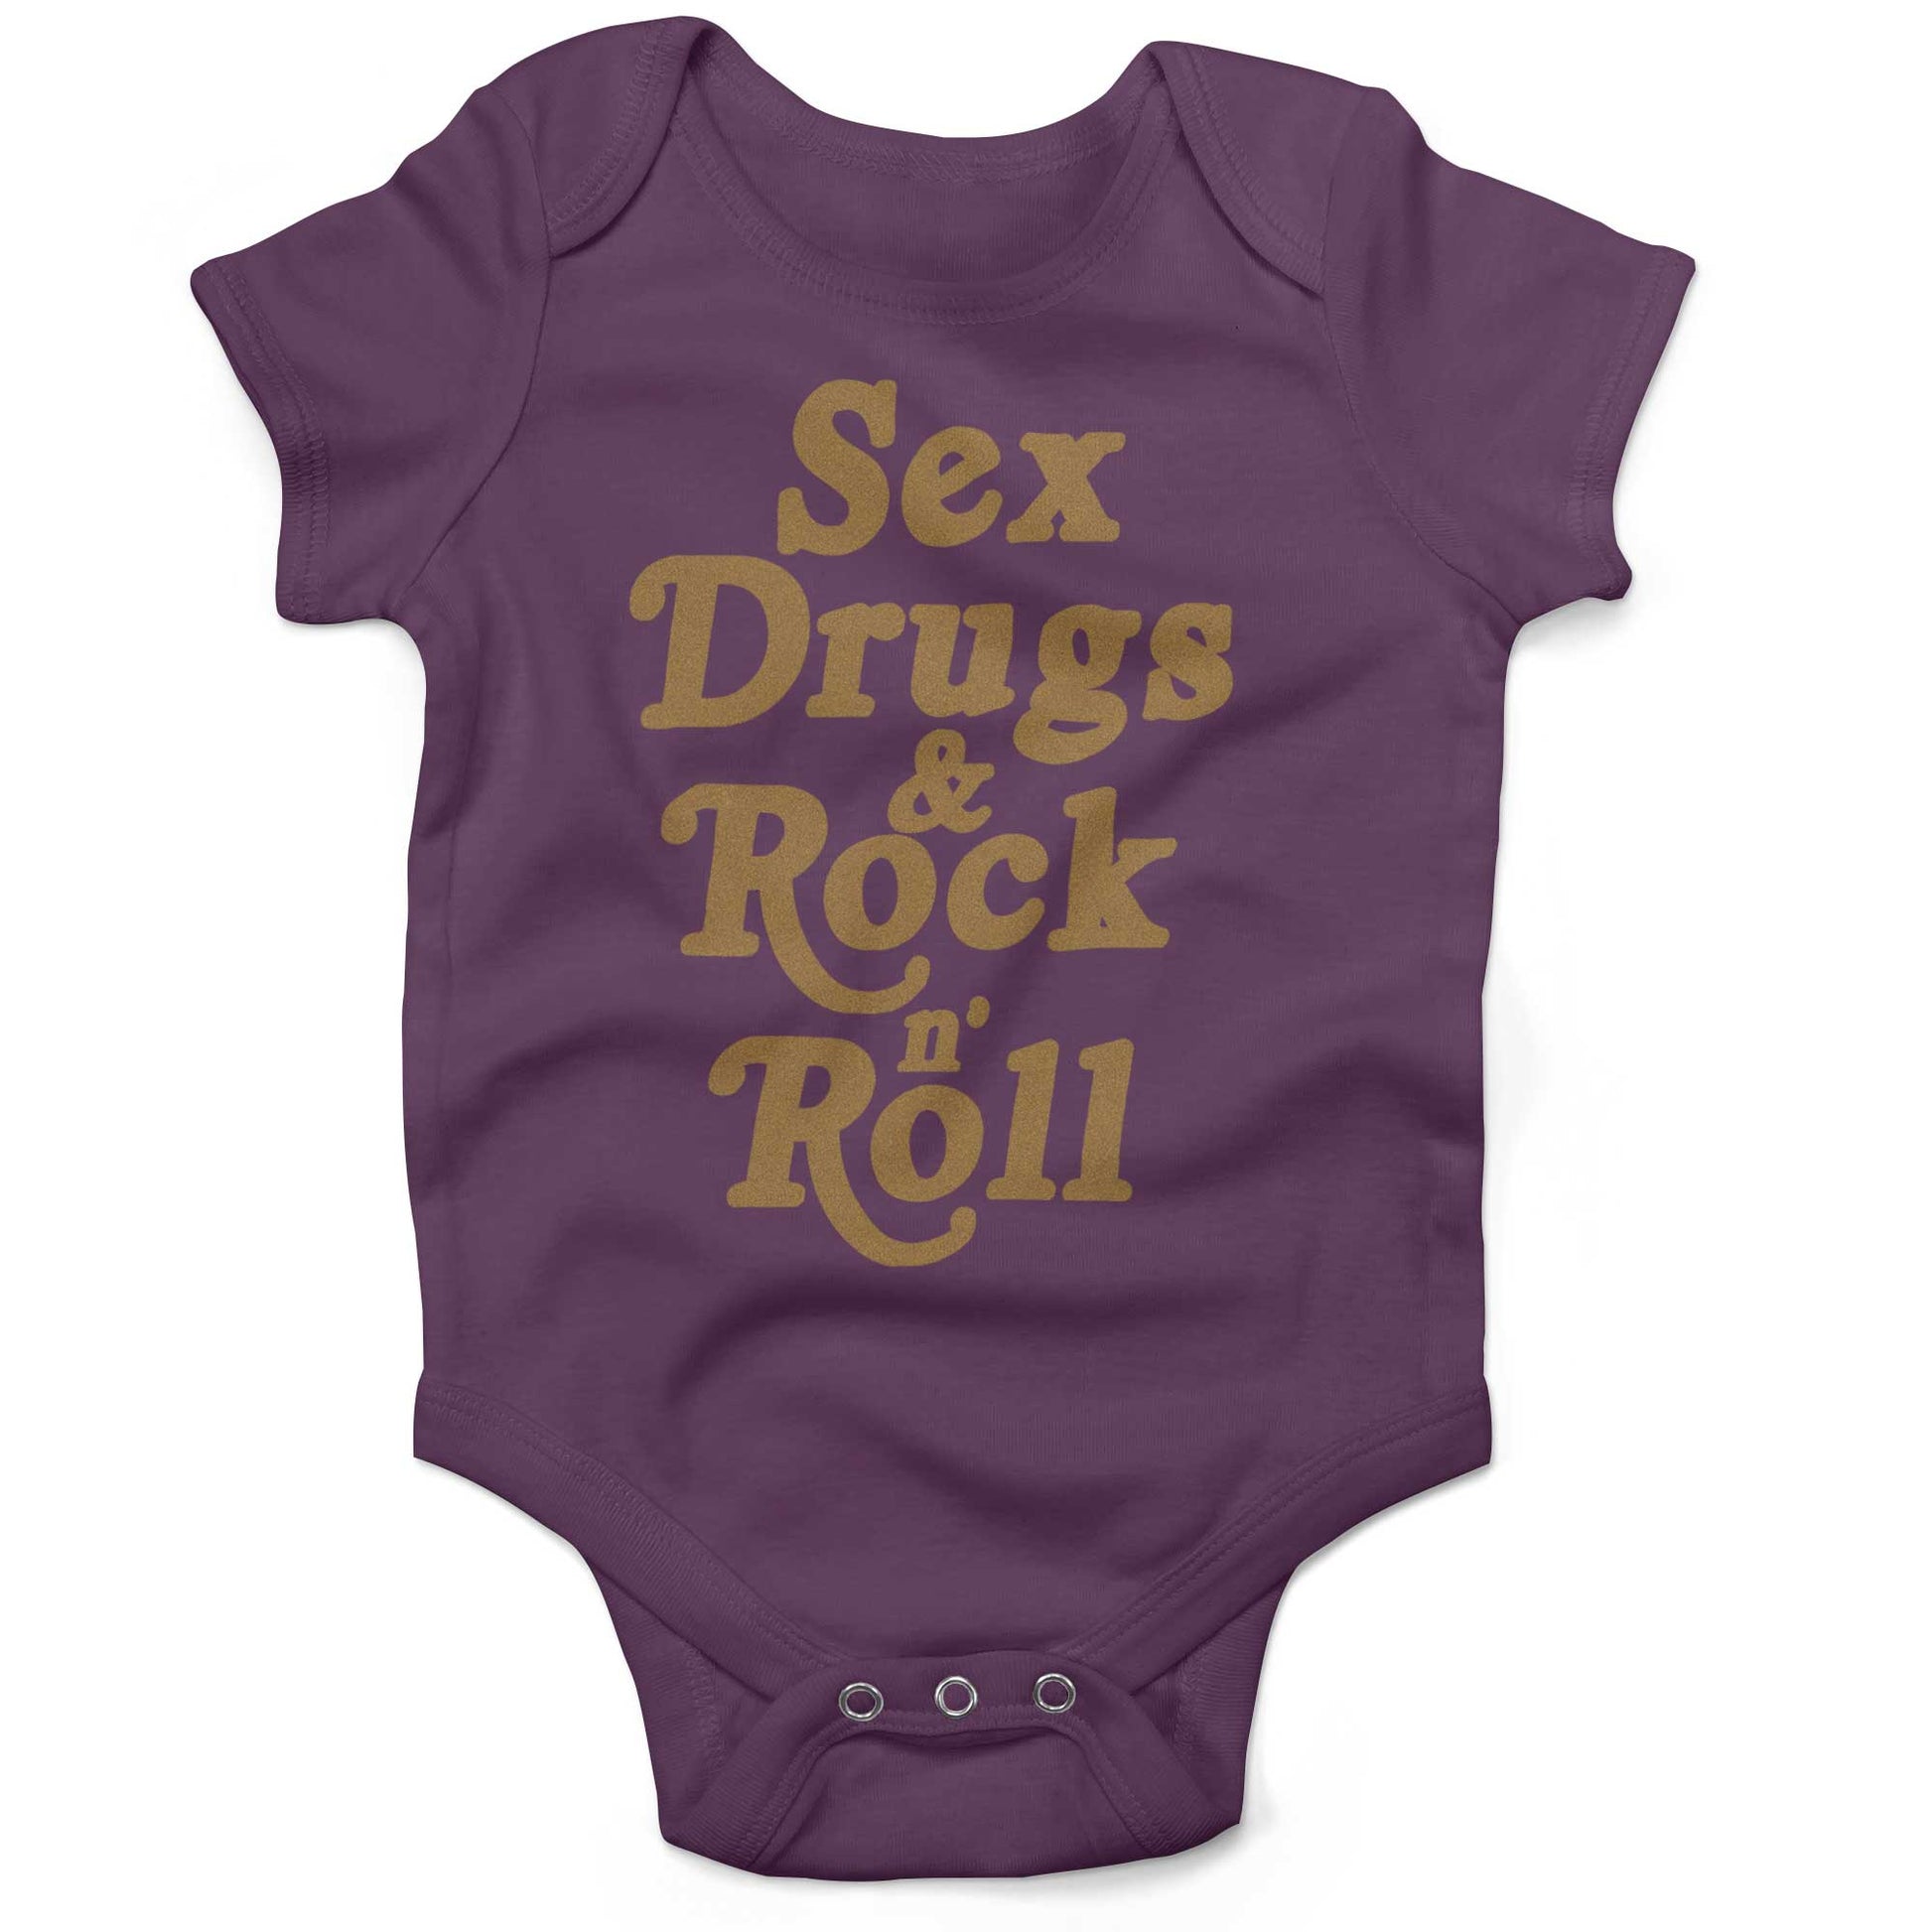 Sex, Drugs & Rock 'n Roll Infant Bodysuit or Raglan Baby Tee-Organic Purple-3-6 months